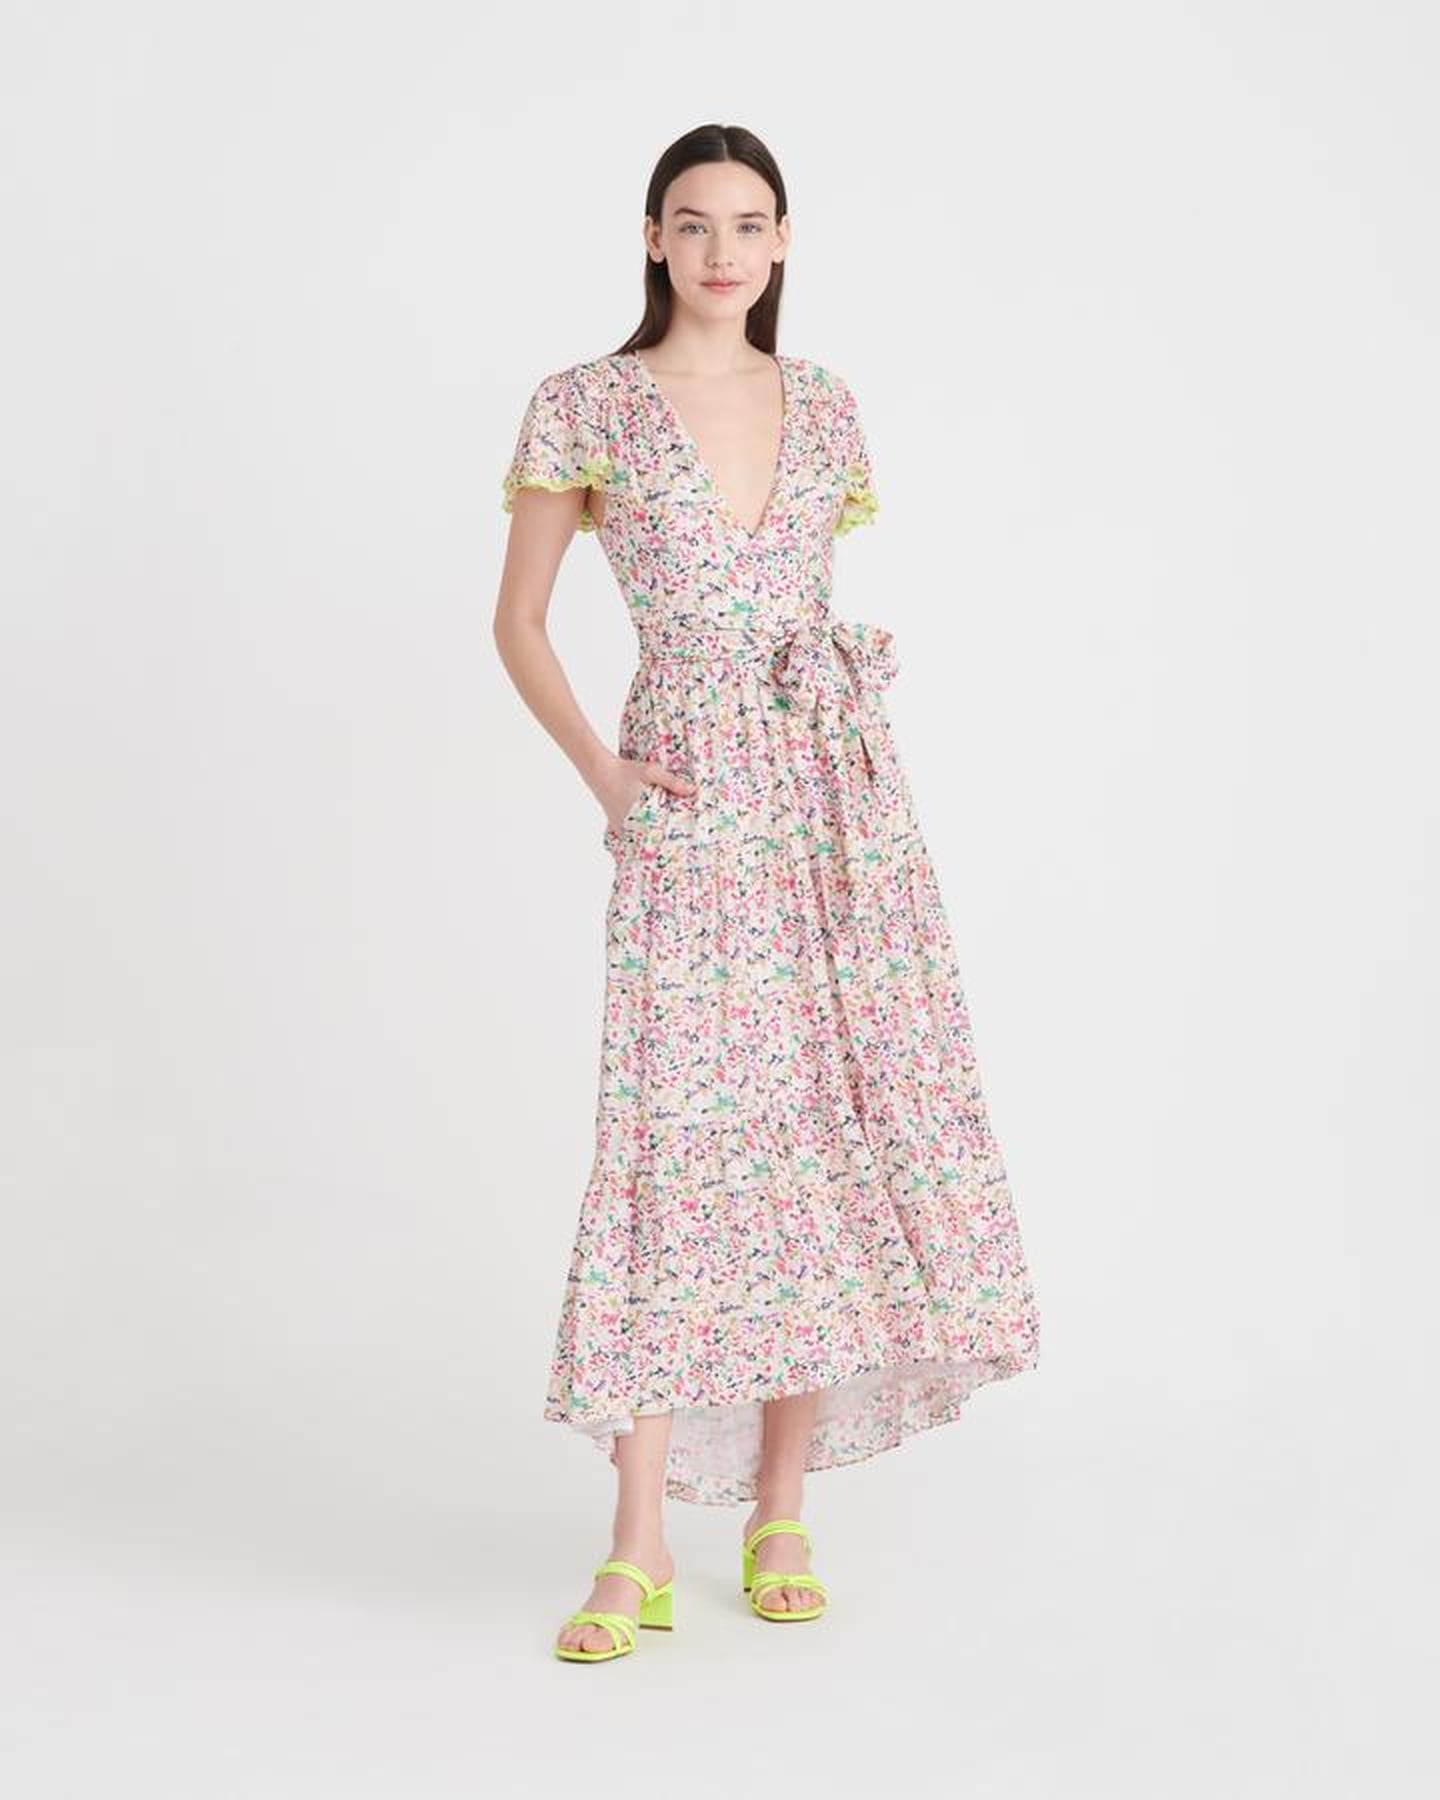 Best Spring Dresses With Pockets 2020 | POPSUGAR Fashion